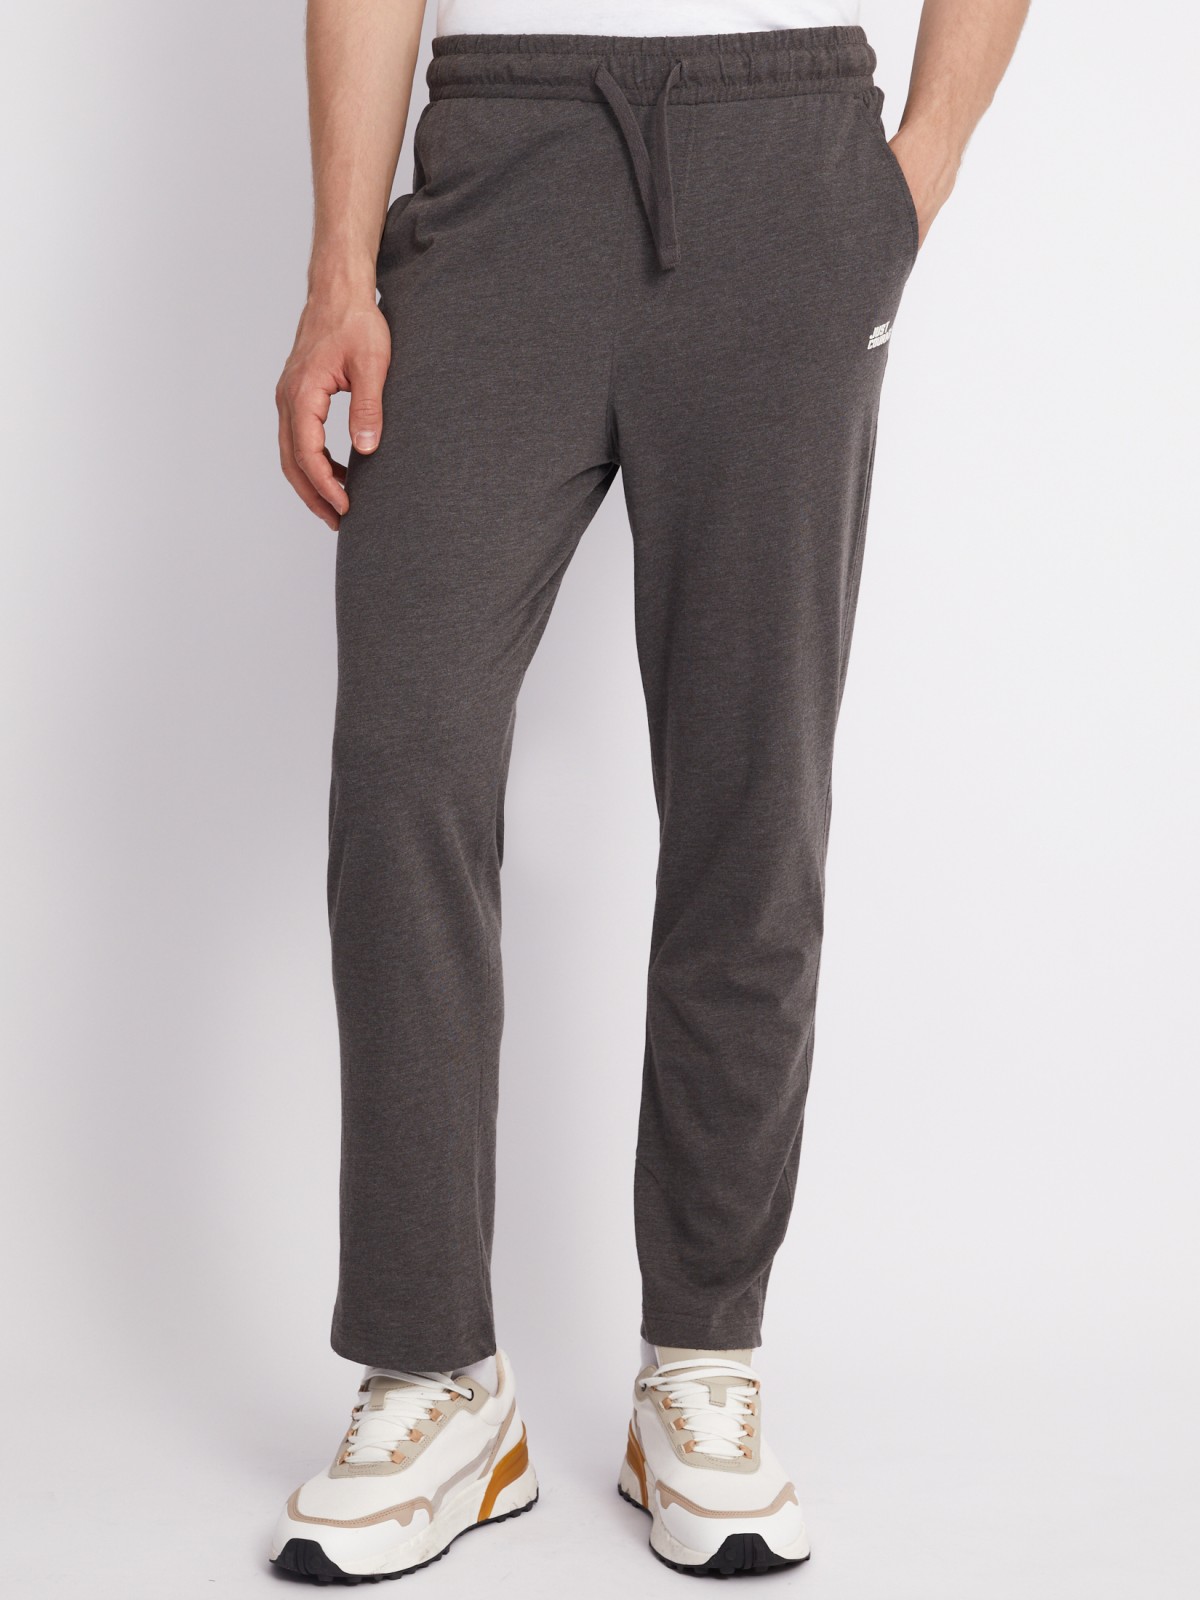 Трикотажные брюки в спортивном стиле zolla 01331765Q022, цвет темно-серый, размер S - фото 4